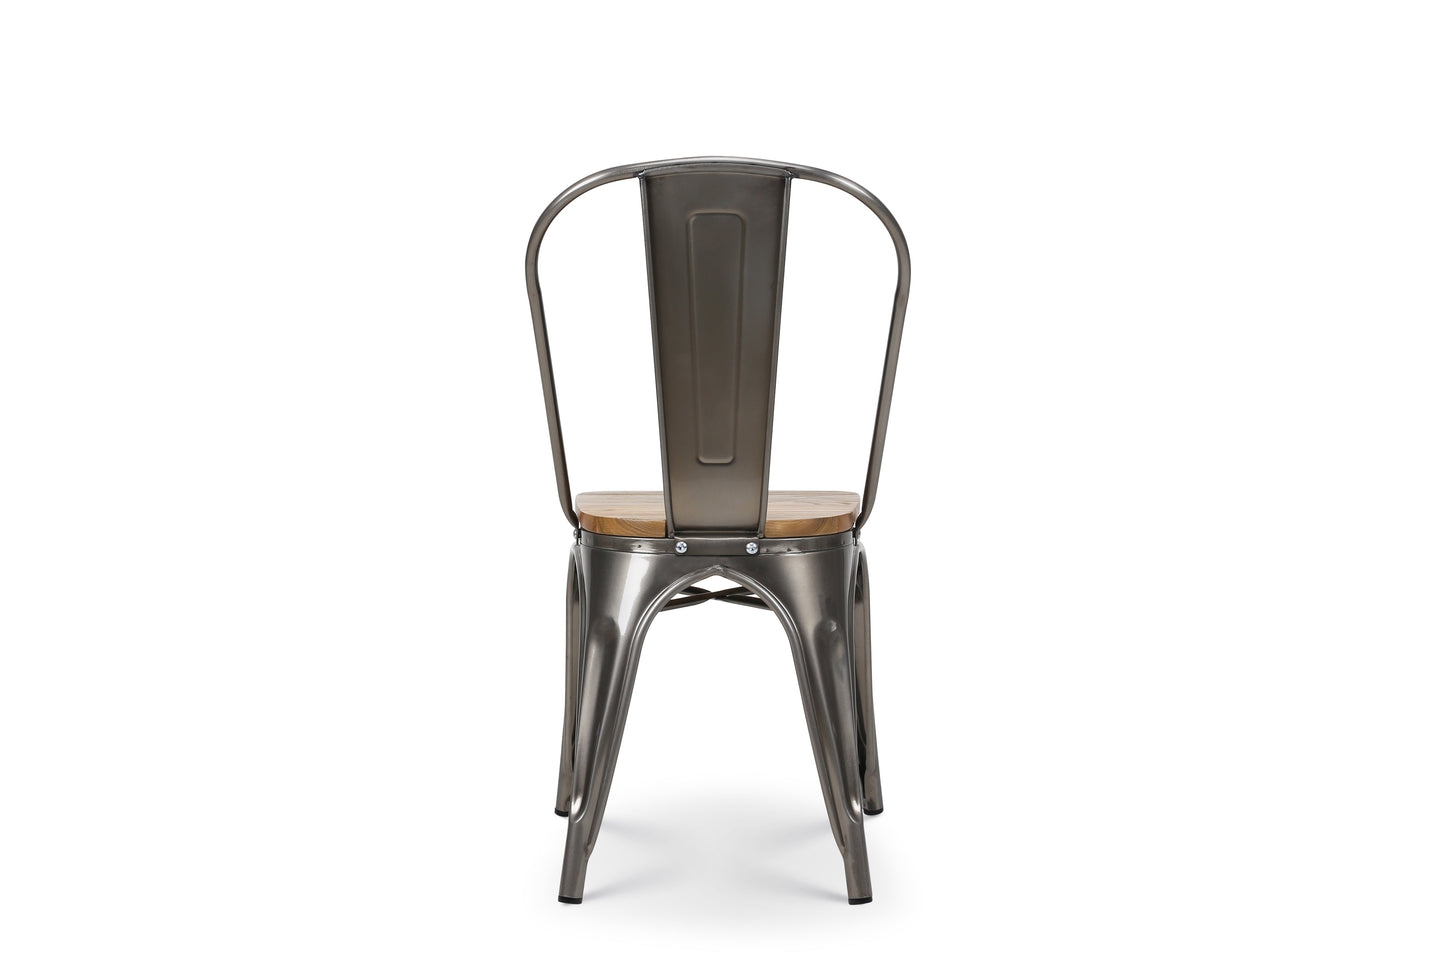 Chaise en métal brut avec assise en bois massif clair - Aspect galvanisé